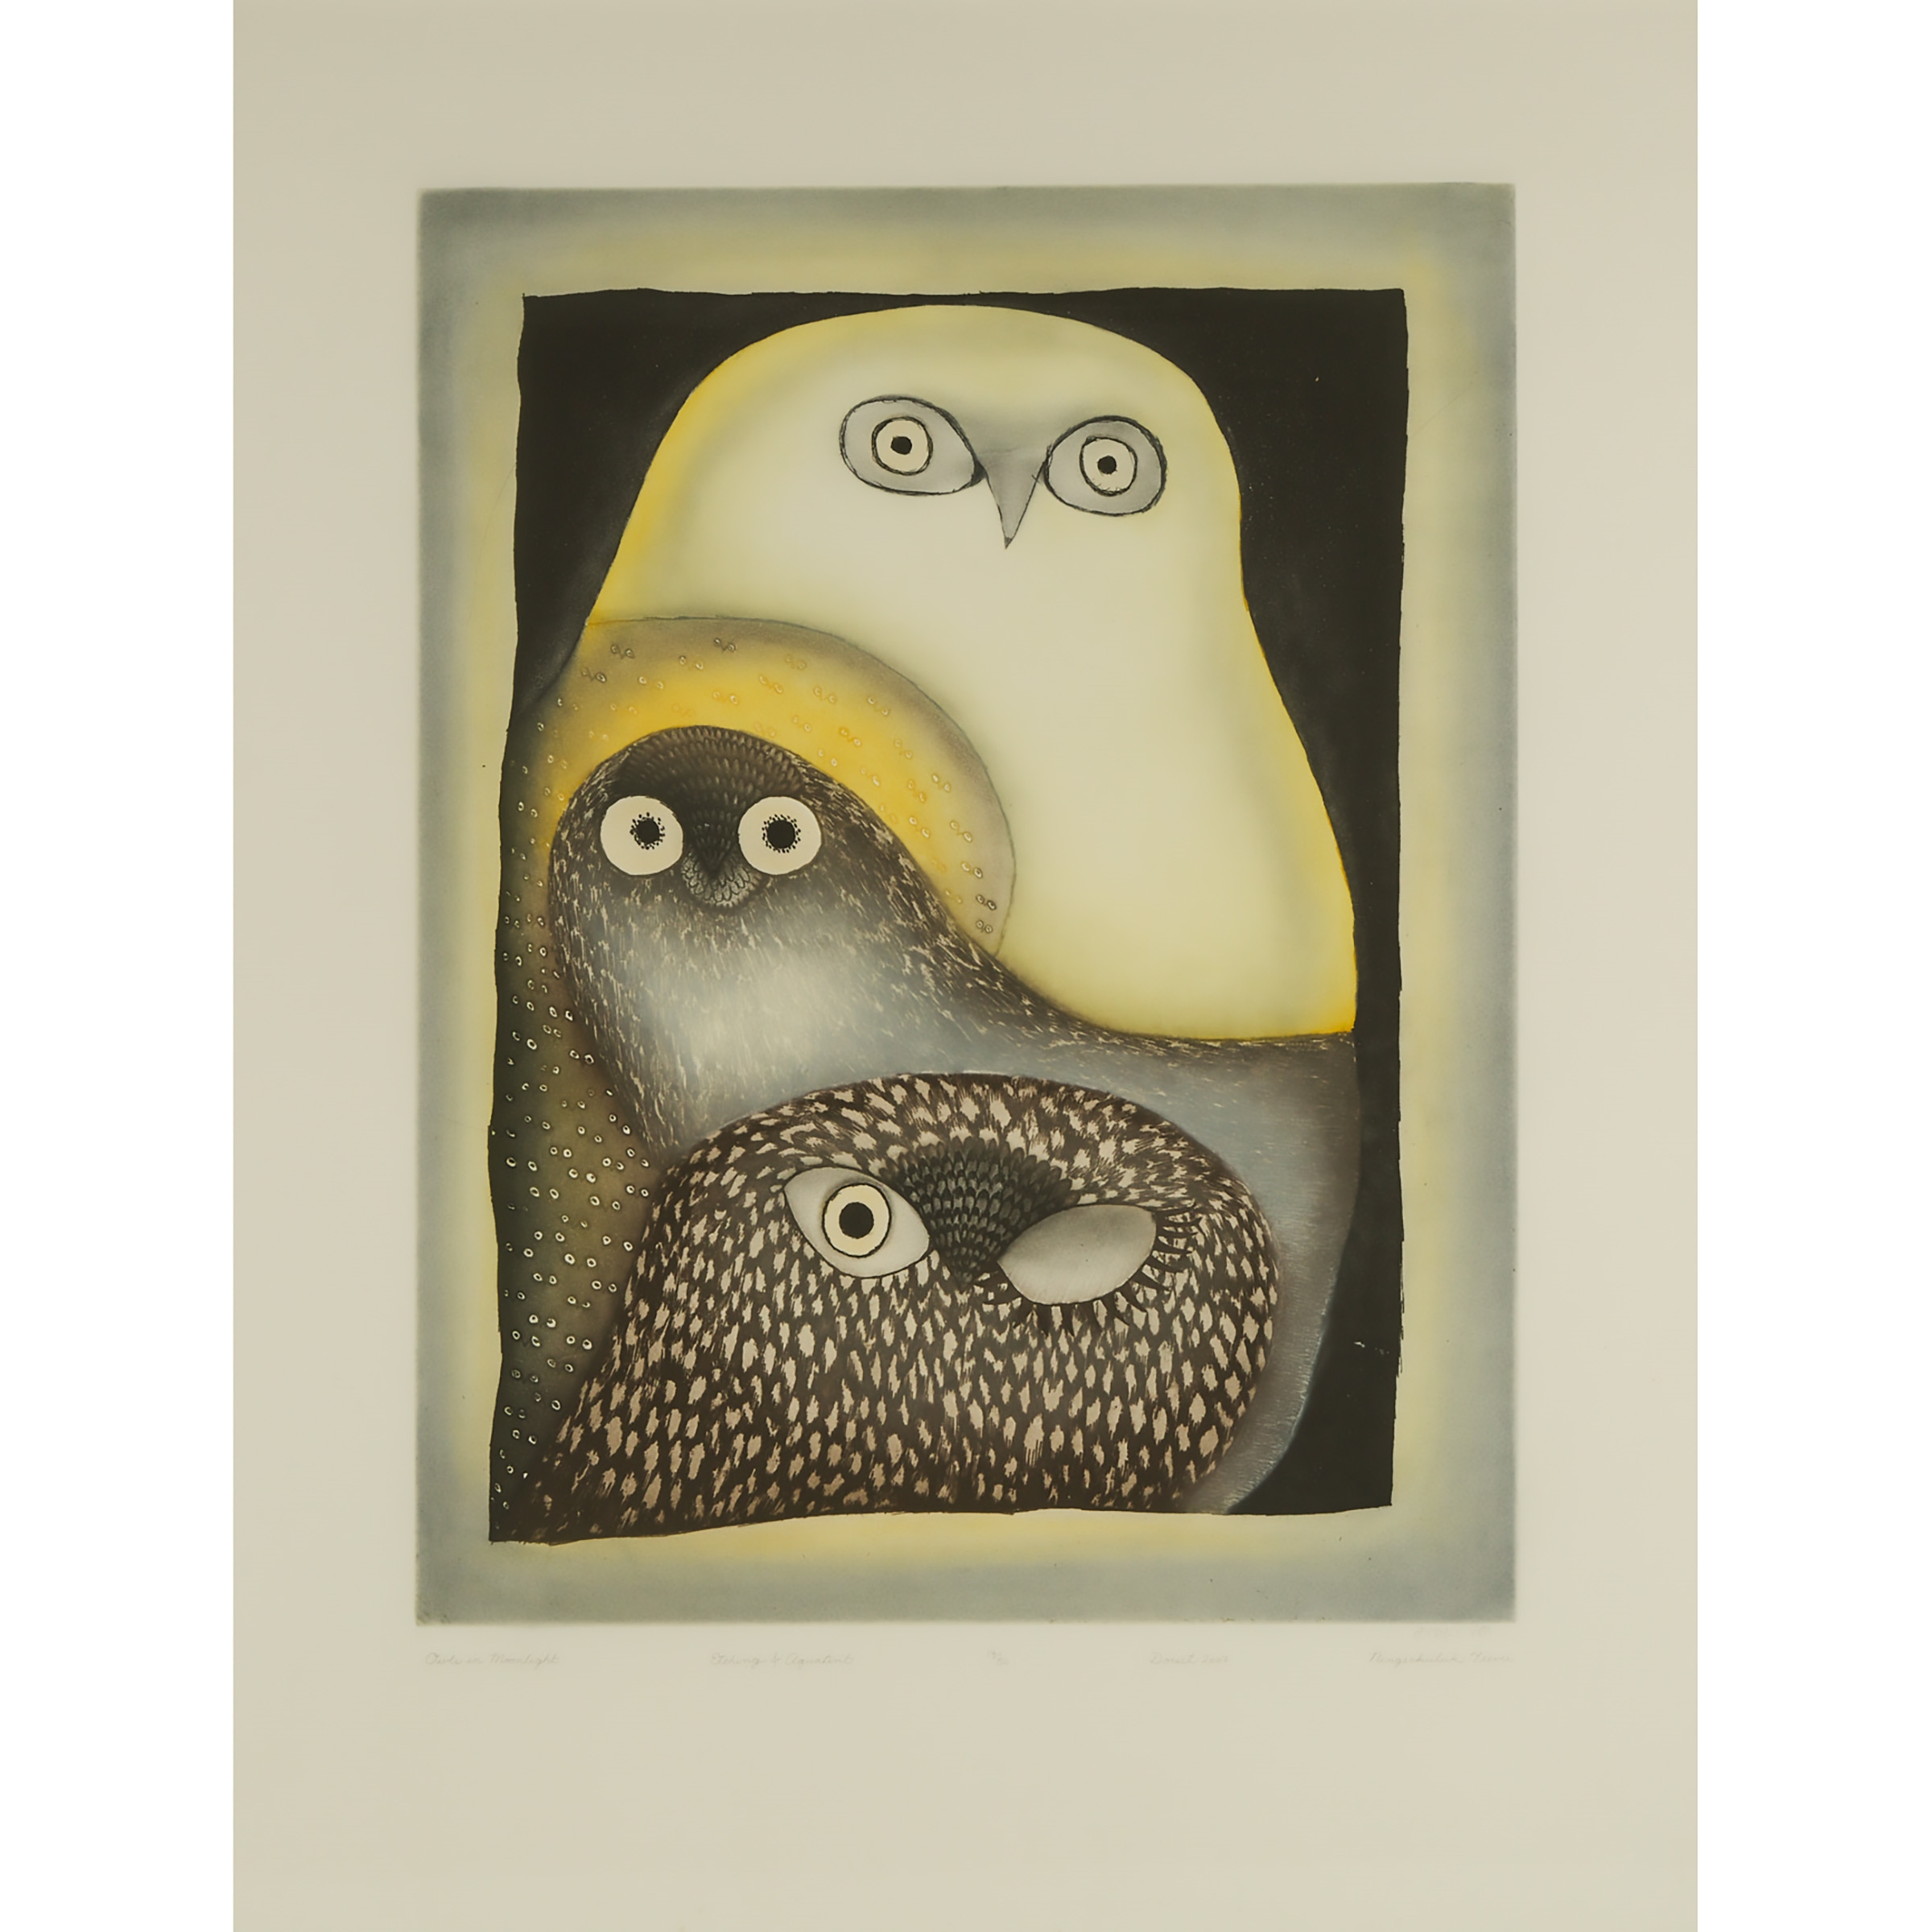 OWLS IN MOONLIGHT, 2007 by Ningeokuluk Teevee, 2007